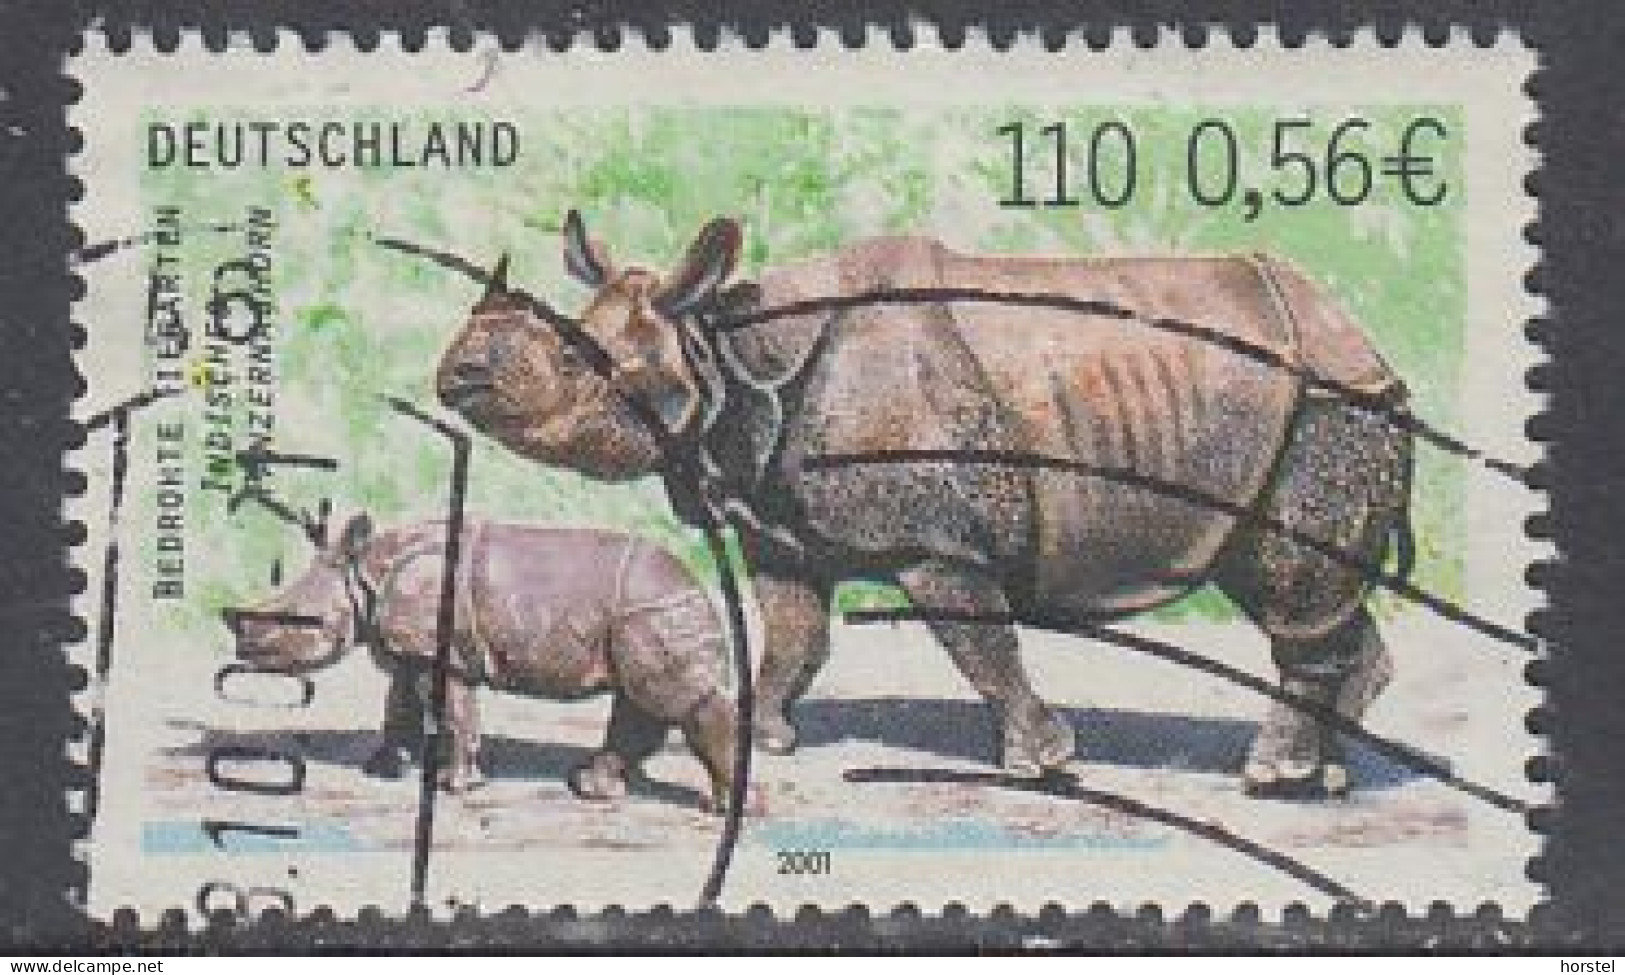 Deutschland Mi.Nr.2183  Bedrohte Tierarten - Indisches Panzernashorn 110/0,56 - Used Stamps